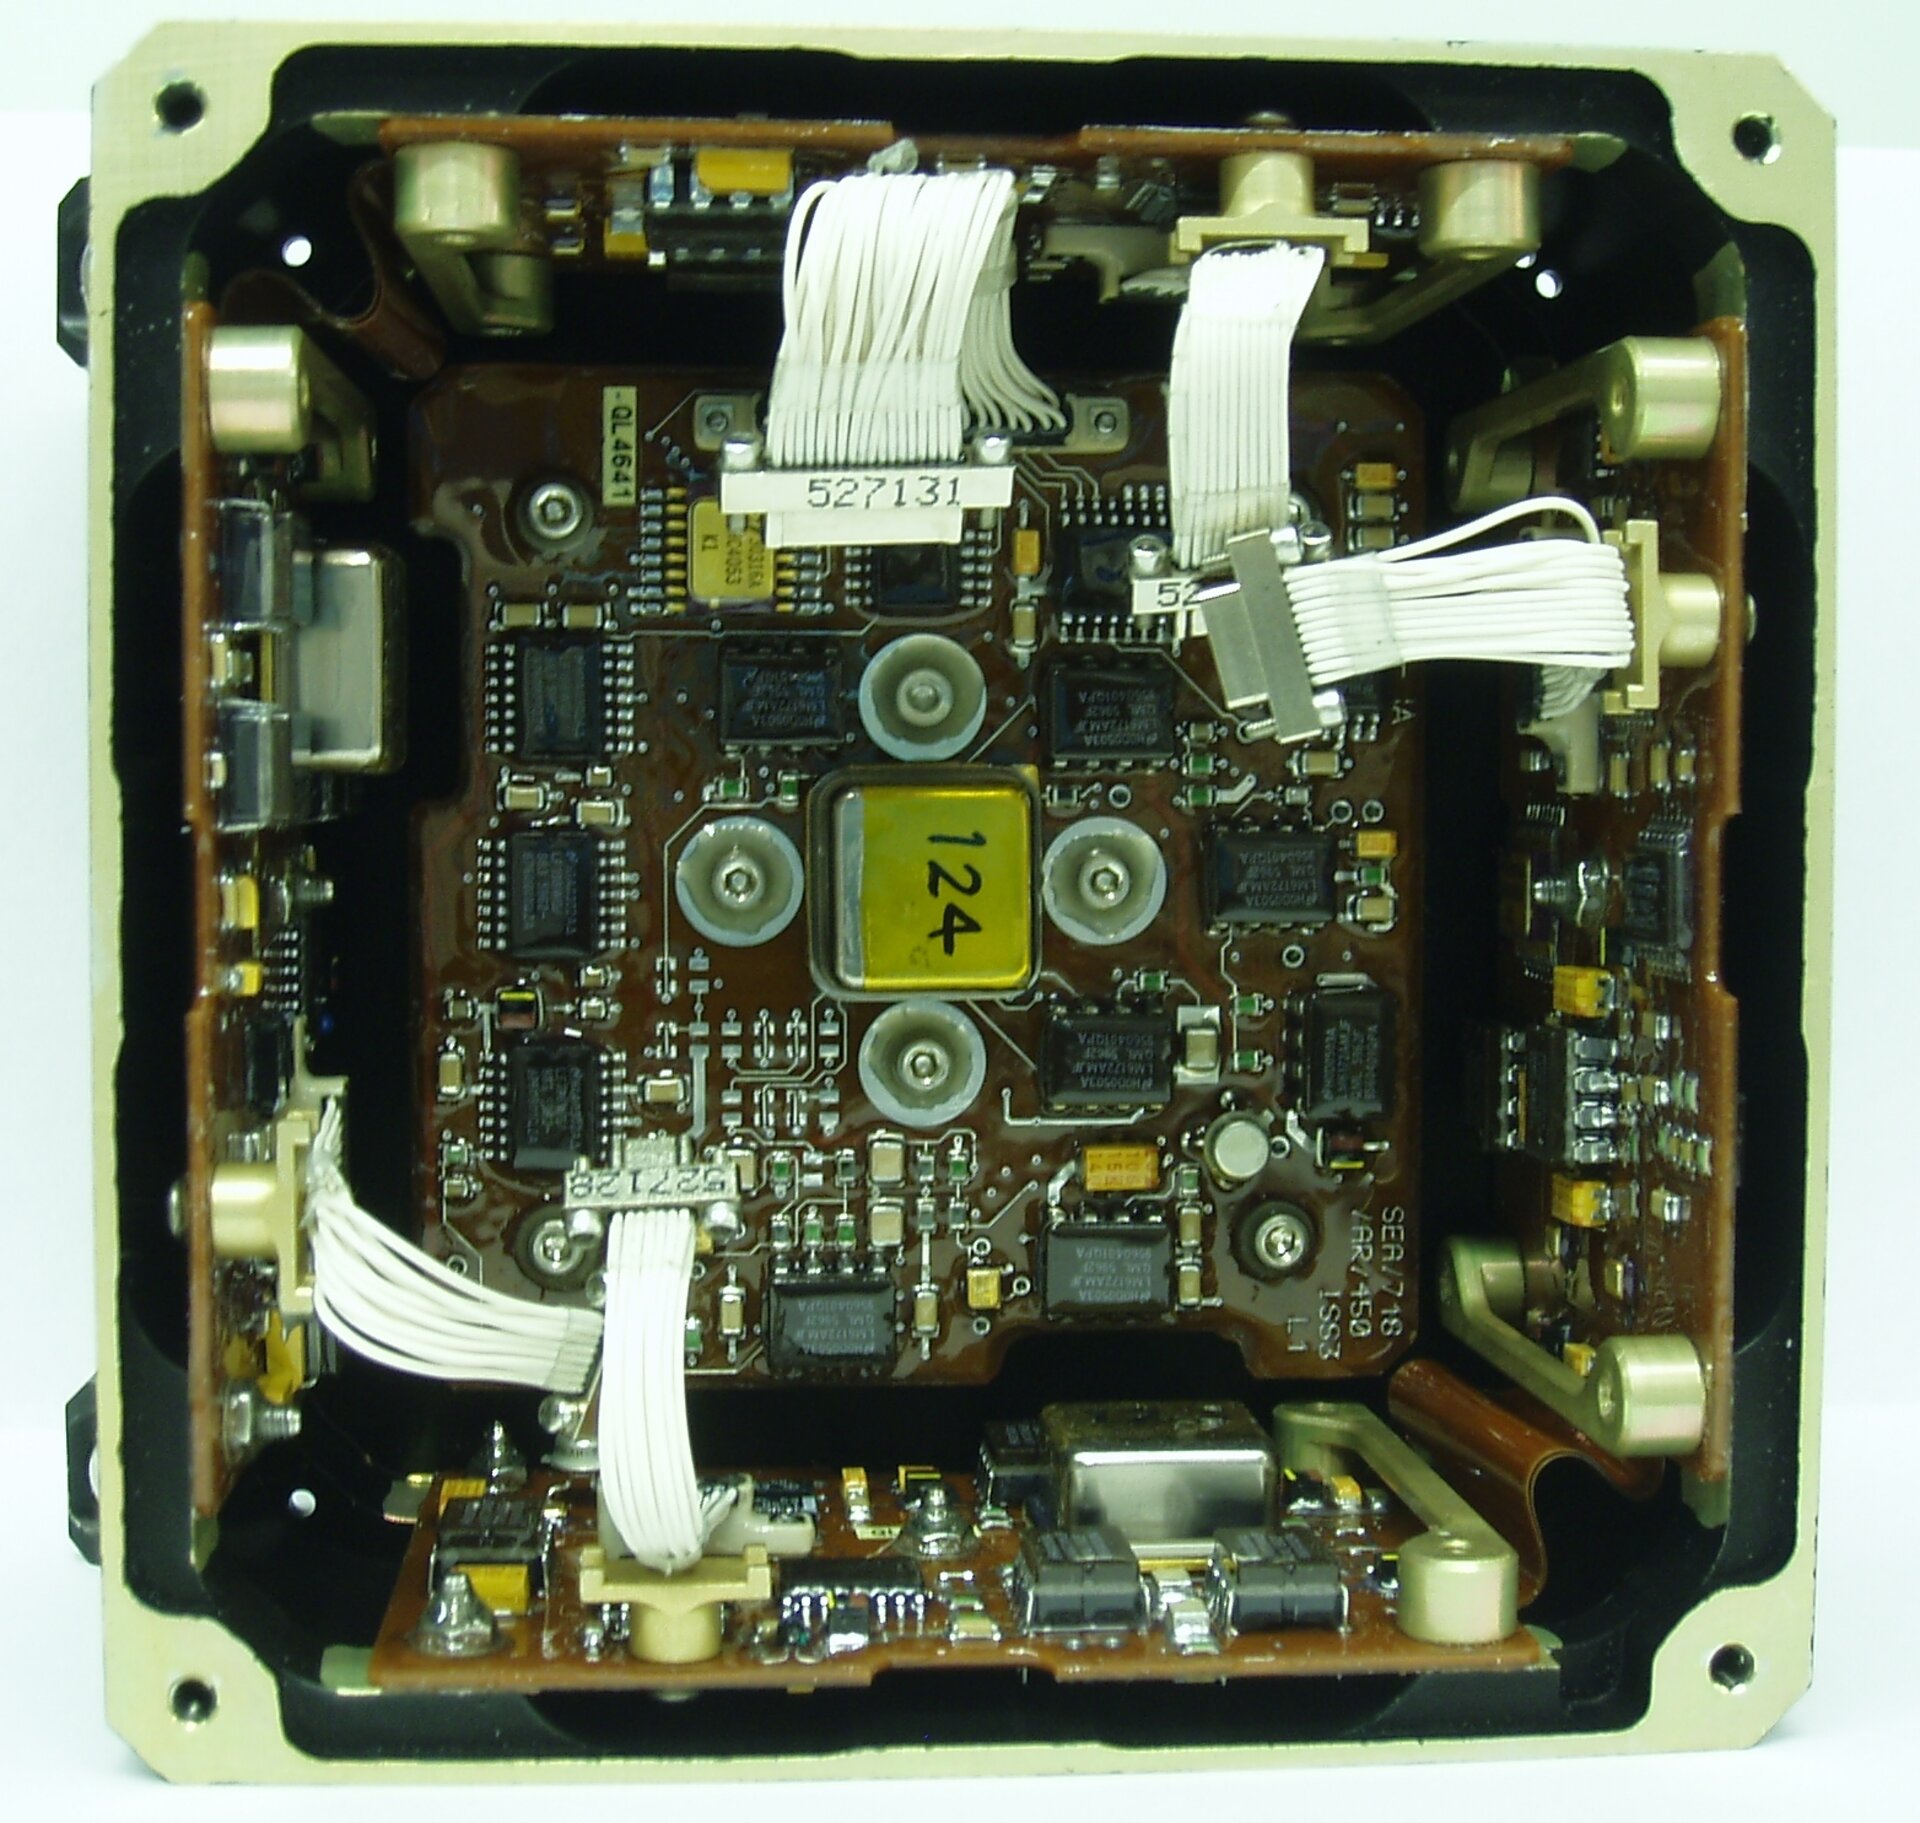 Inside view of MEMS rate sensor